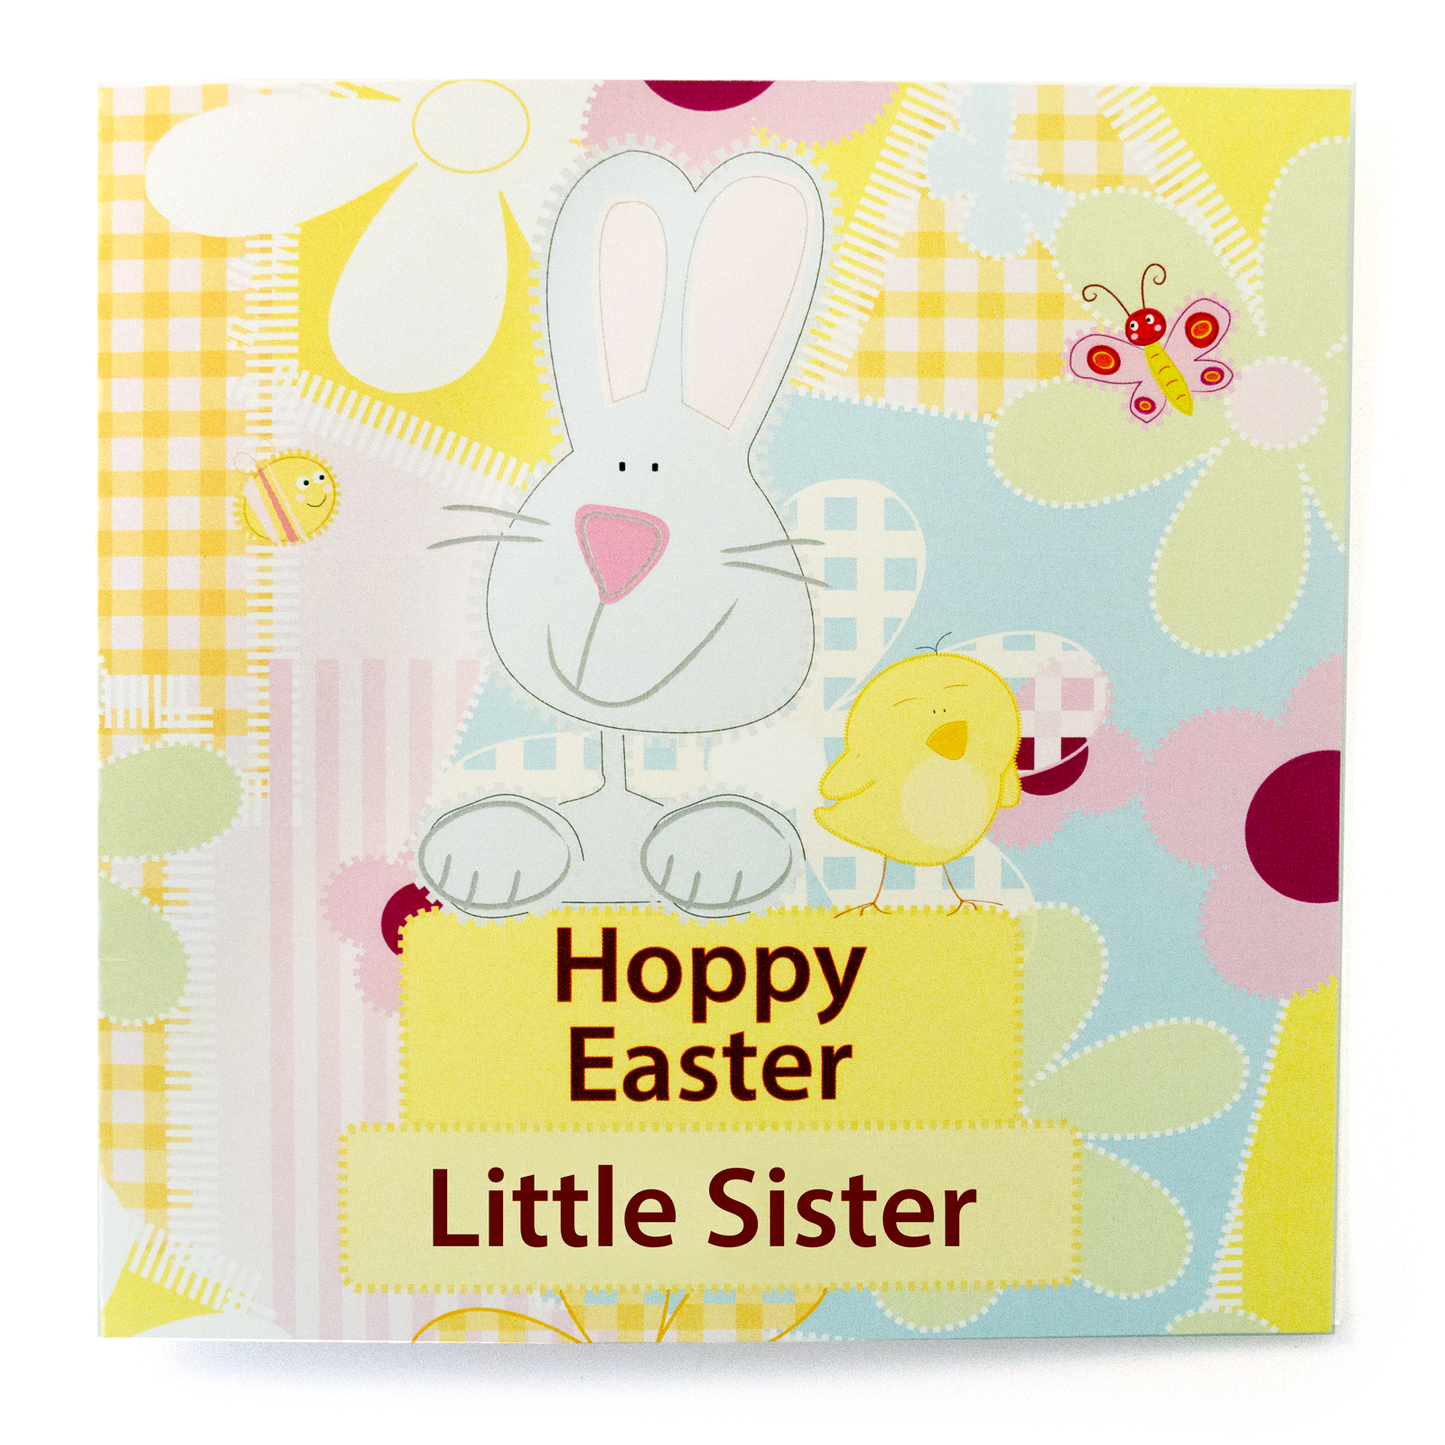 Hoppy Easter Little Sister Card